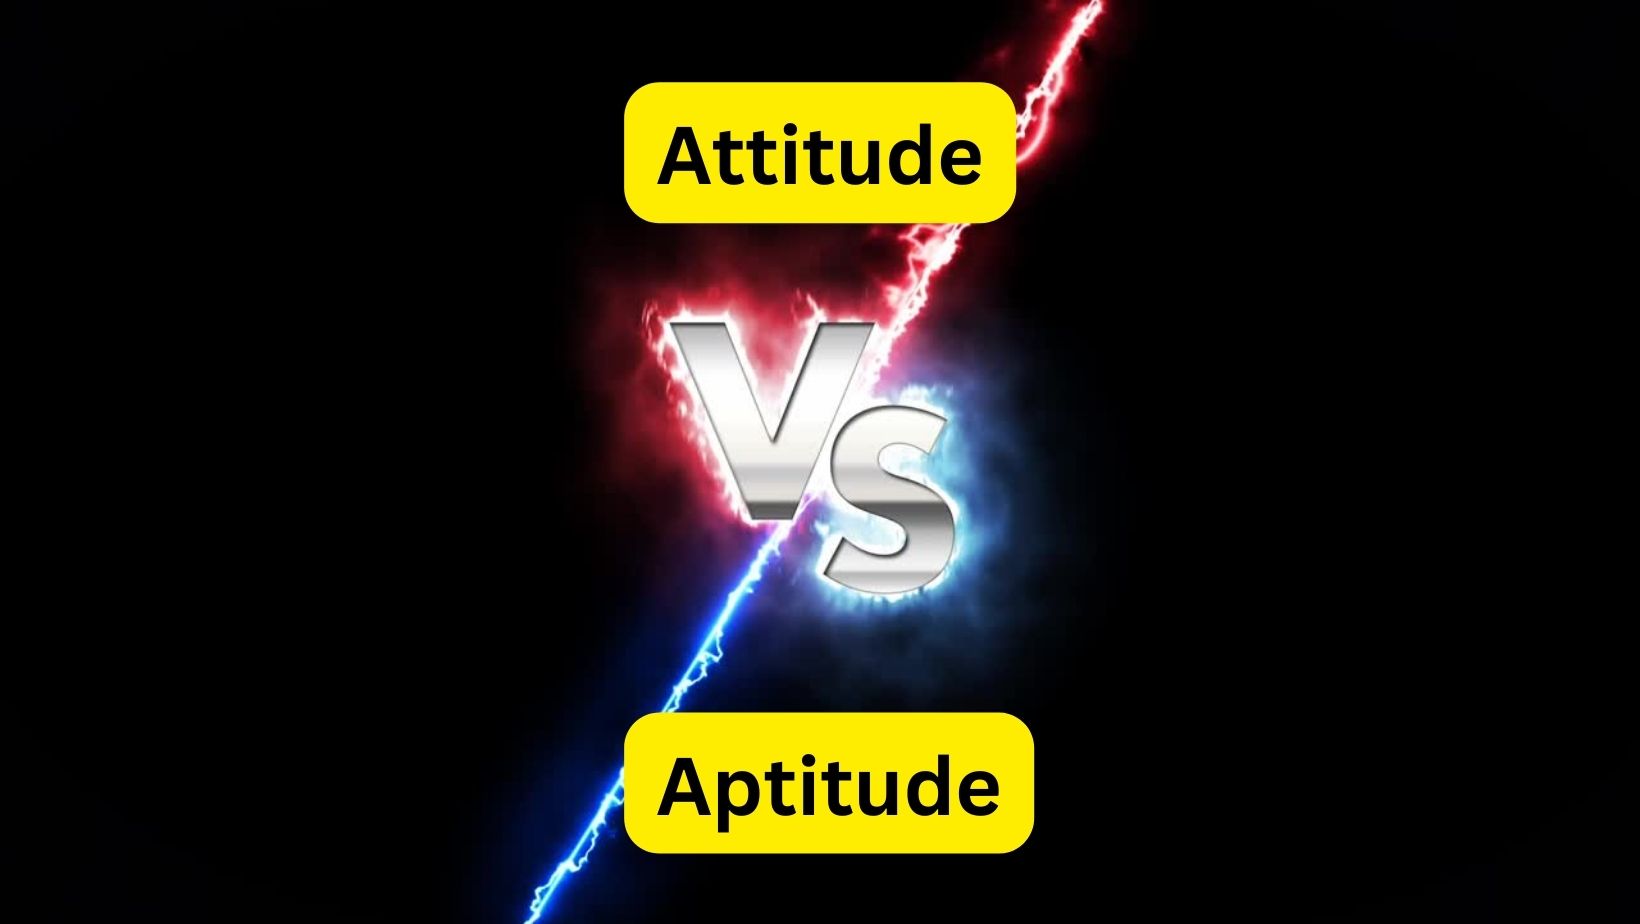 Attitude vs Aptitude